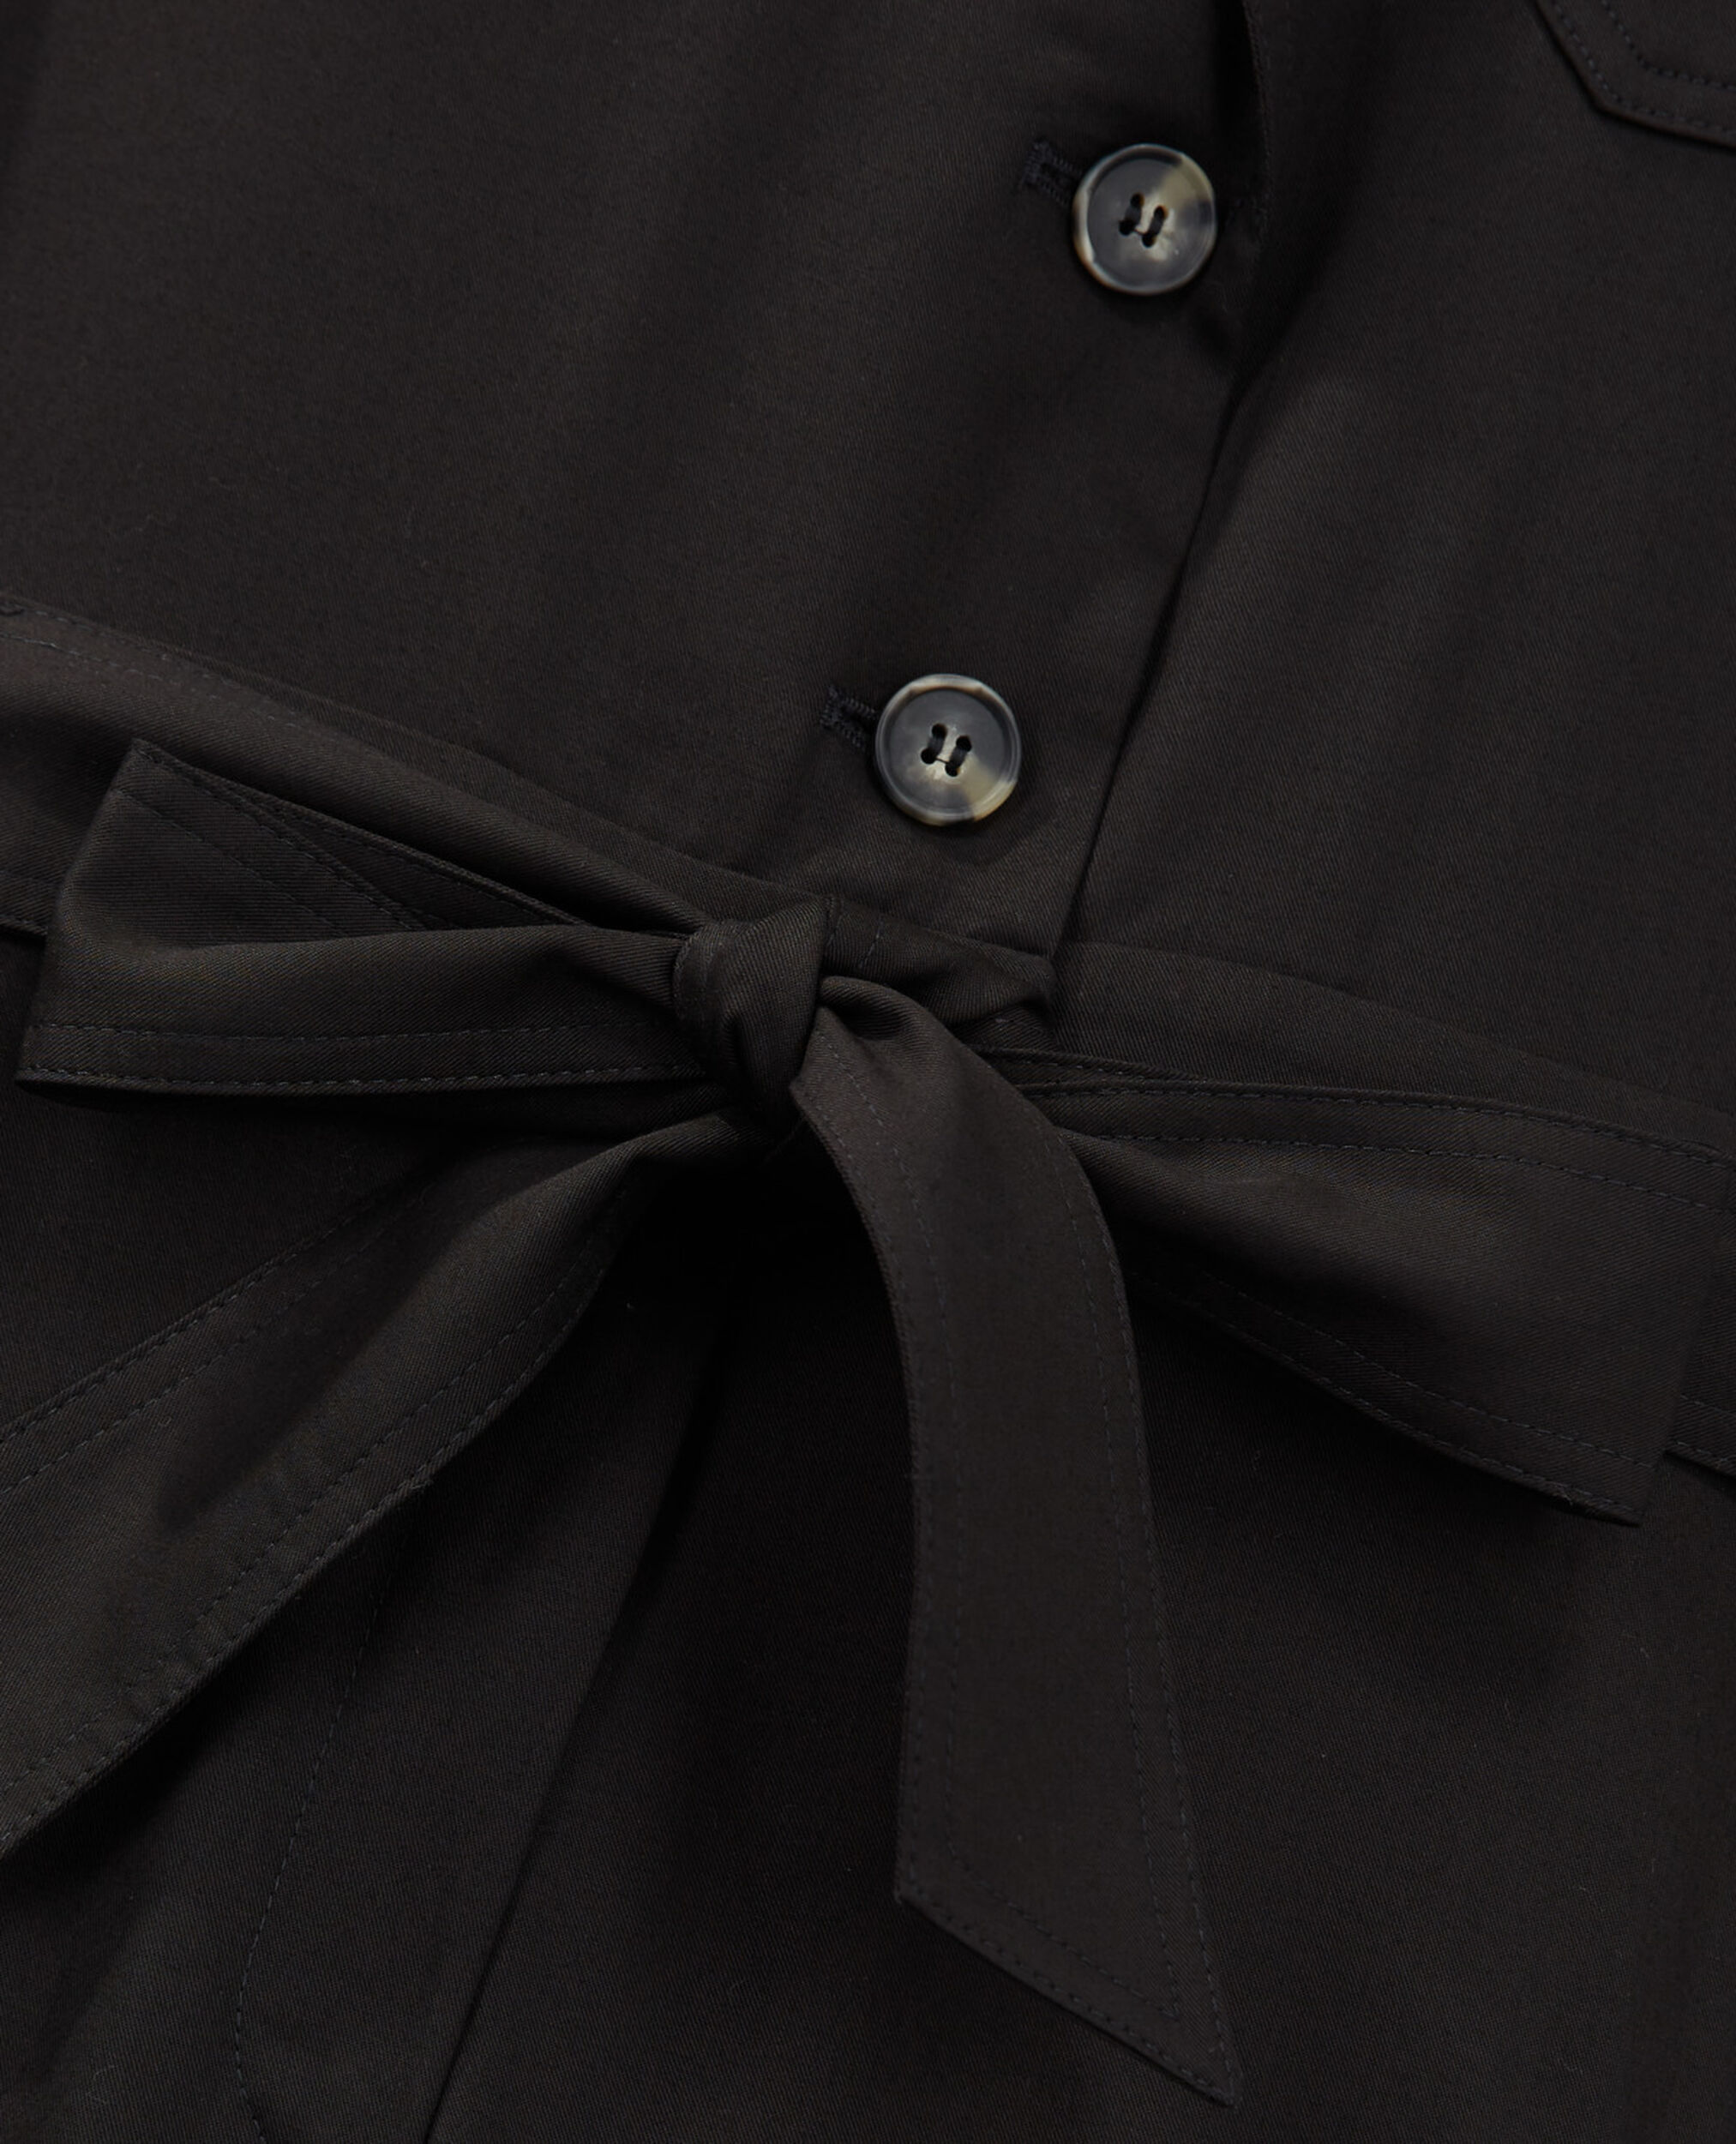 Belted black tencel jumpsuit, BLACK, hi-res image number null